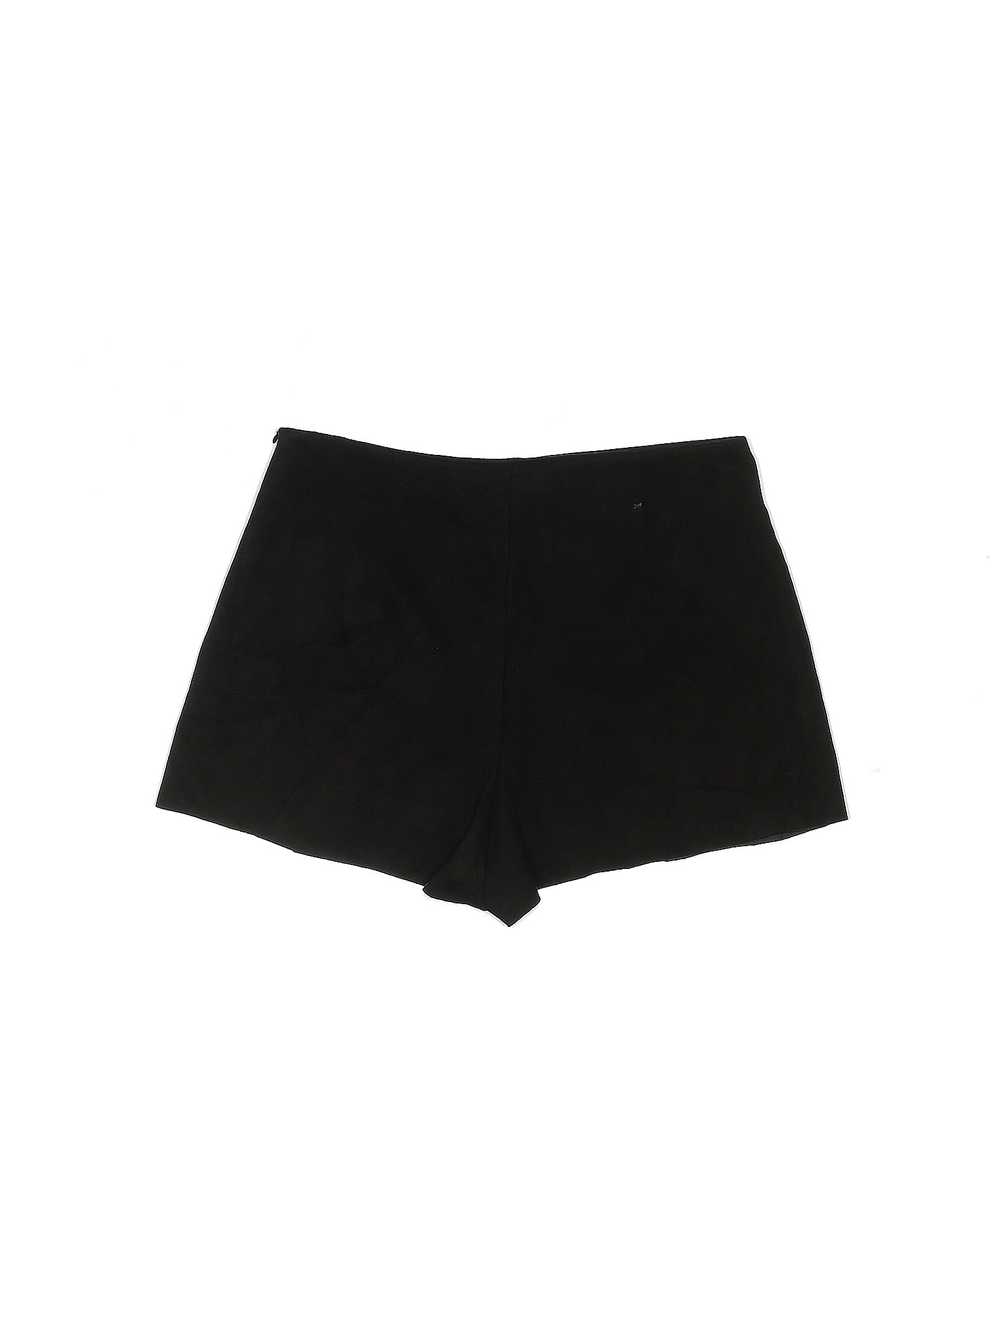 Caren Forbes Women Black Shorts M - image 2